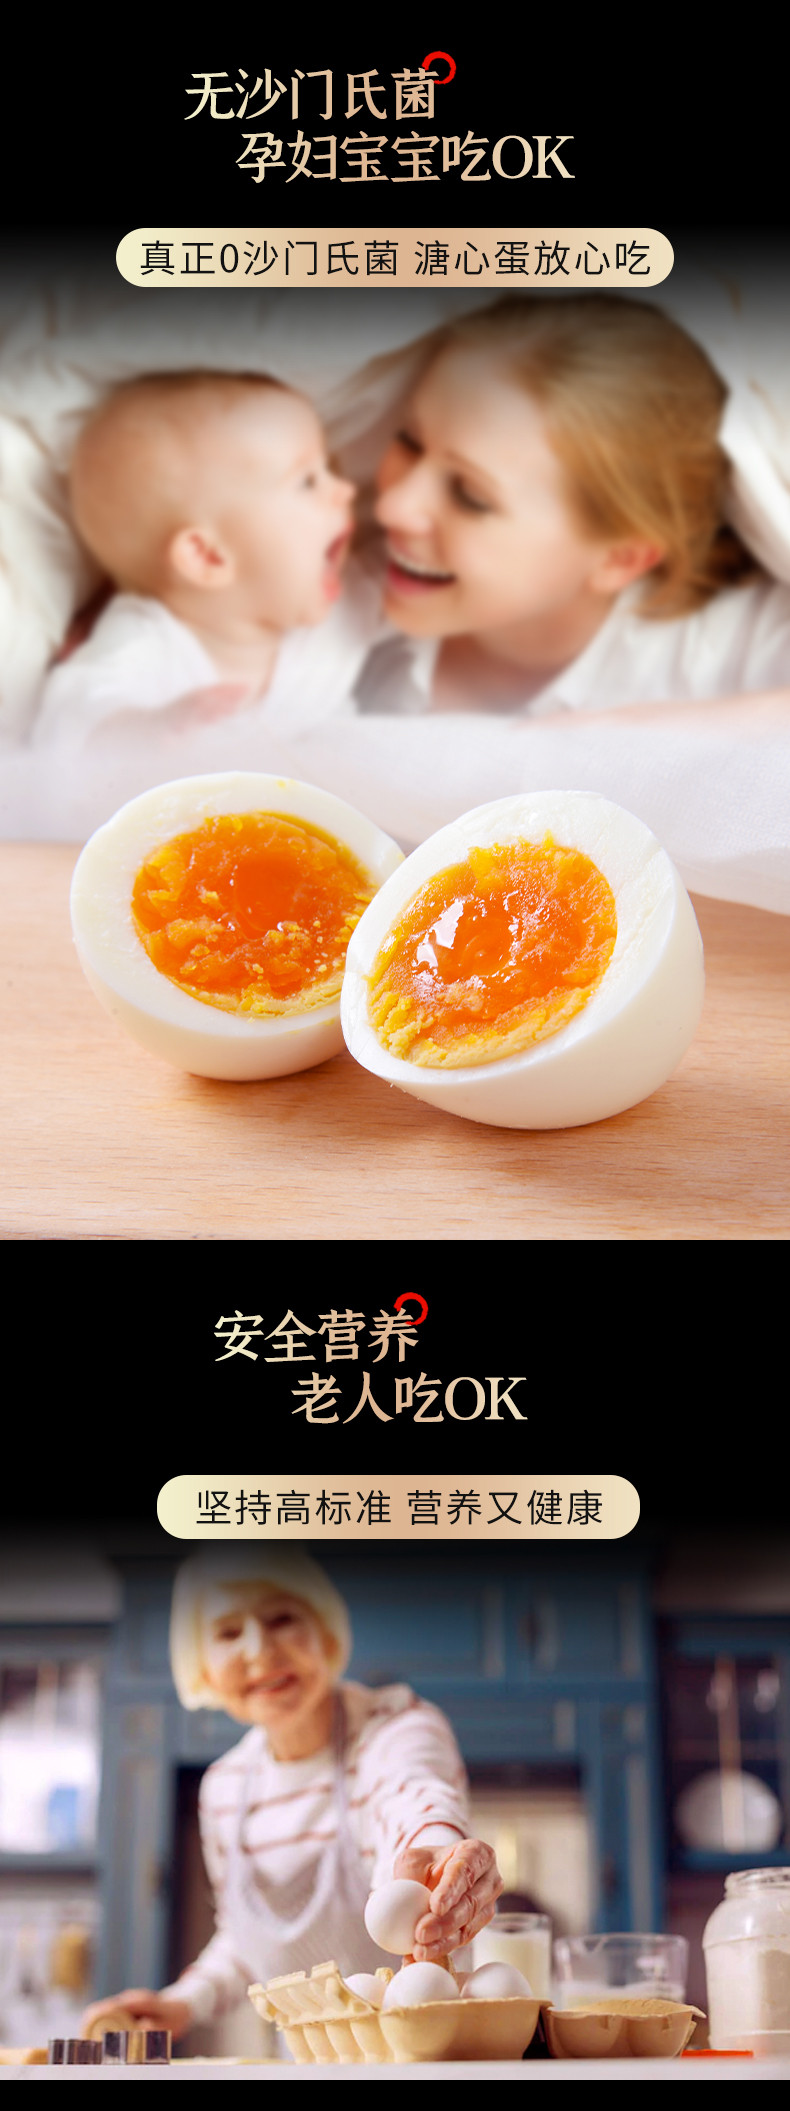 安普瑞鲜蛋 【长清优选】OK蛋鲜鸡蛋30枚/箱 新鲜安全营养无菌